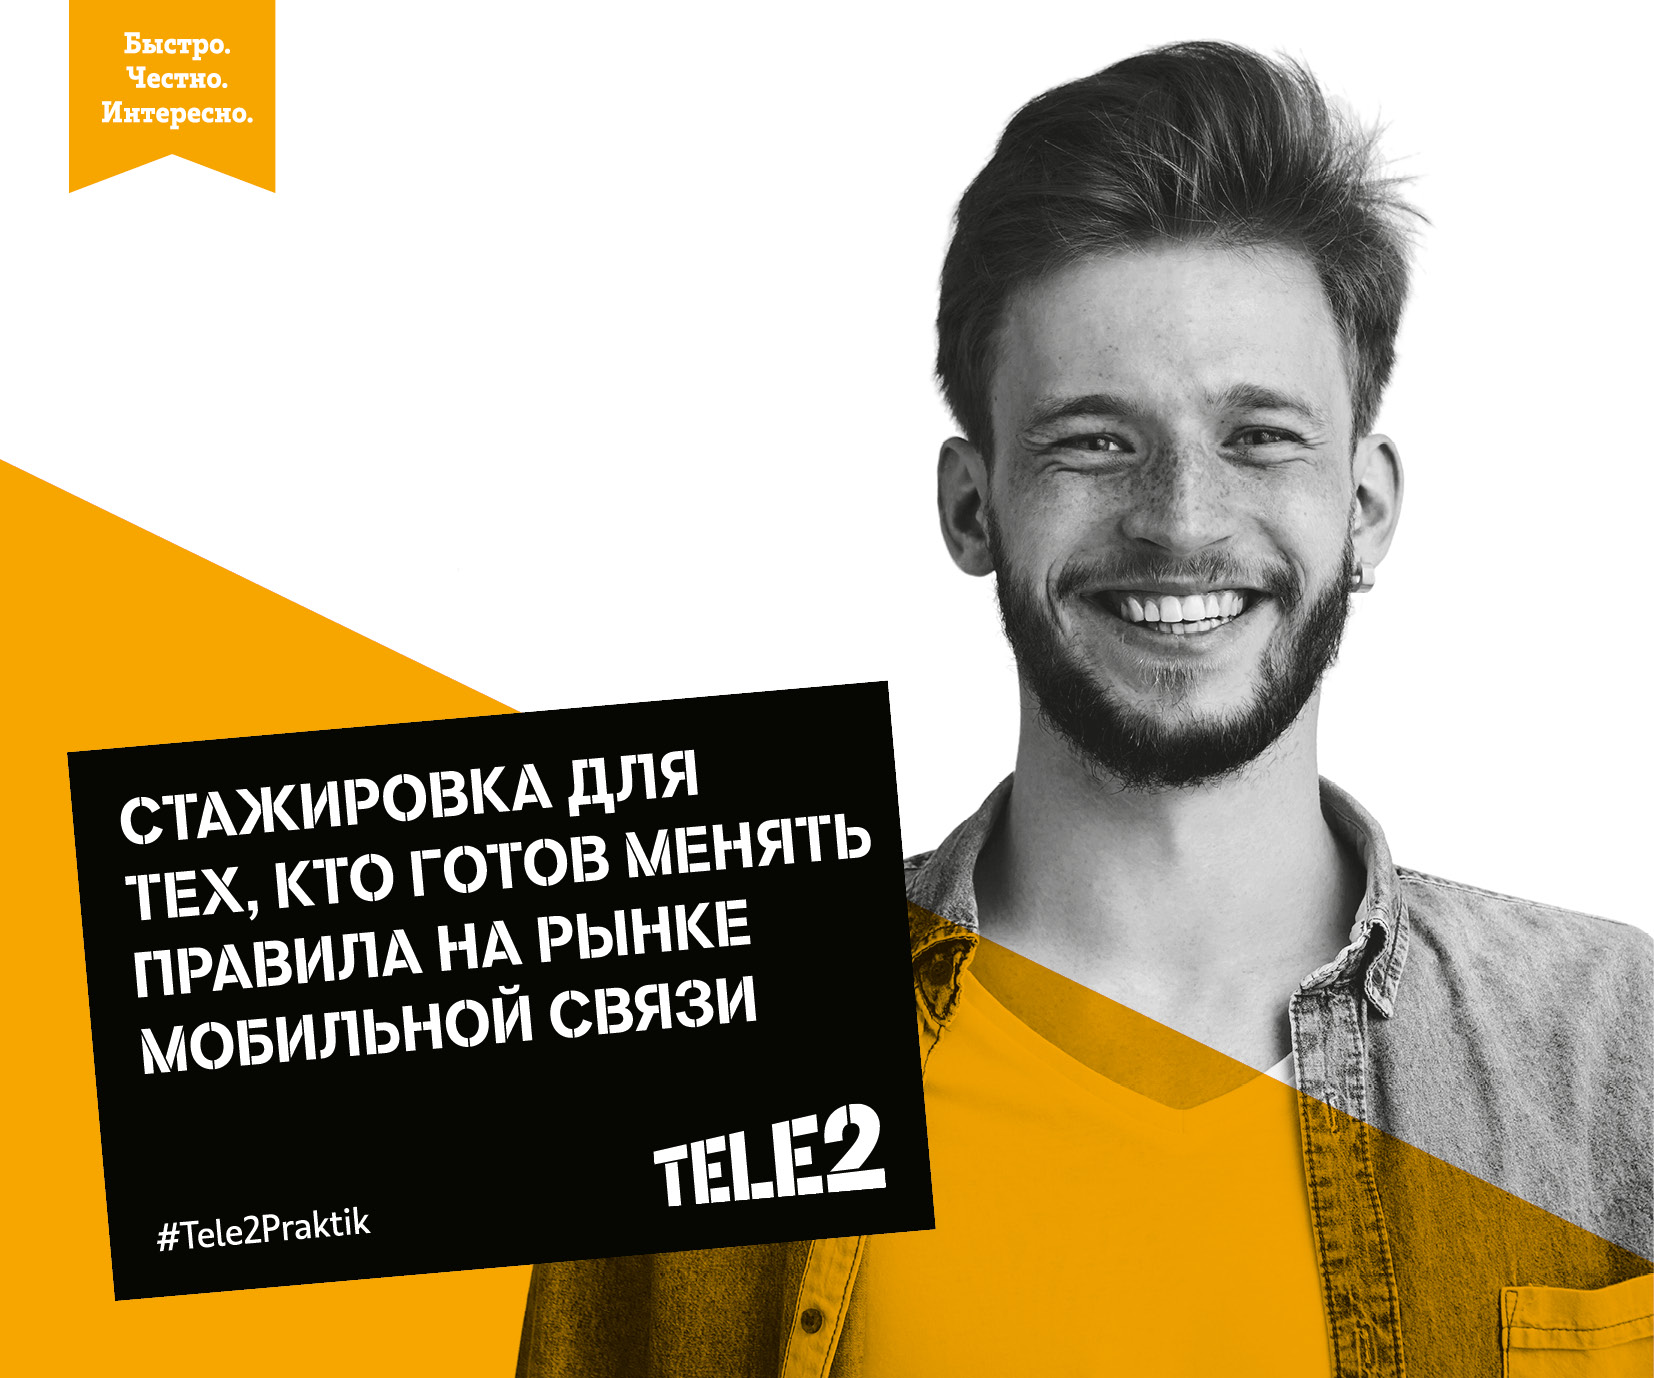 Tele2 ждет молодых специалистов, Tele2, Tele2 новости, Tele2 стажировка, Tele2 последние новости, Tele2 новости сегодня, программы стажировки для учащихся российских вузов, программа стажировки для учащихся российских вузов